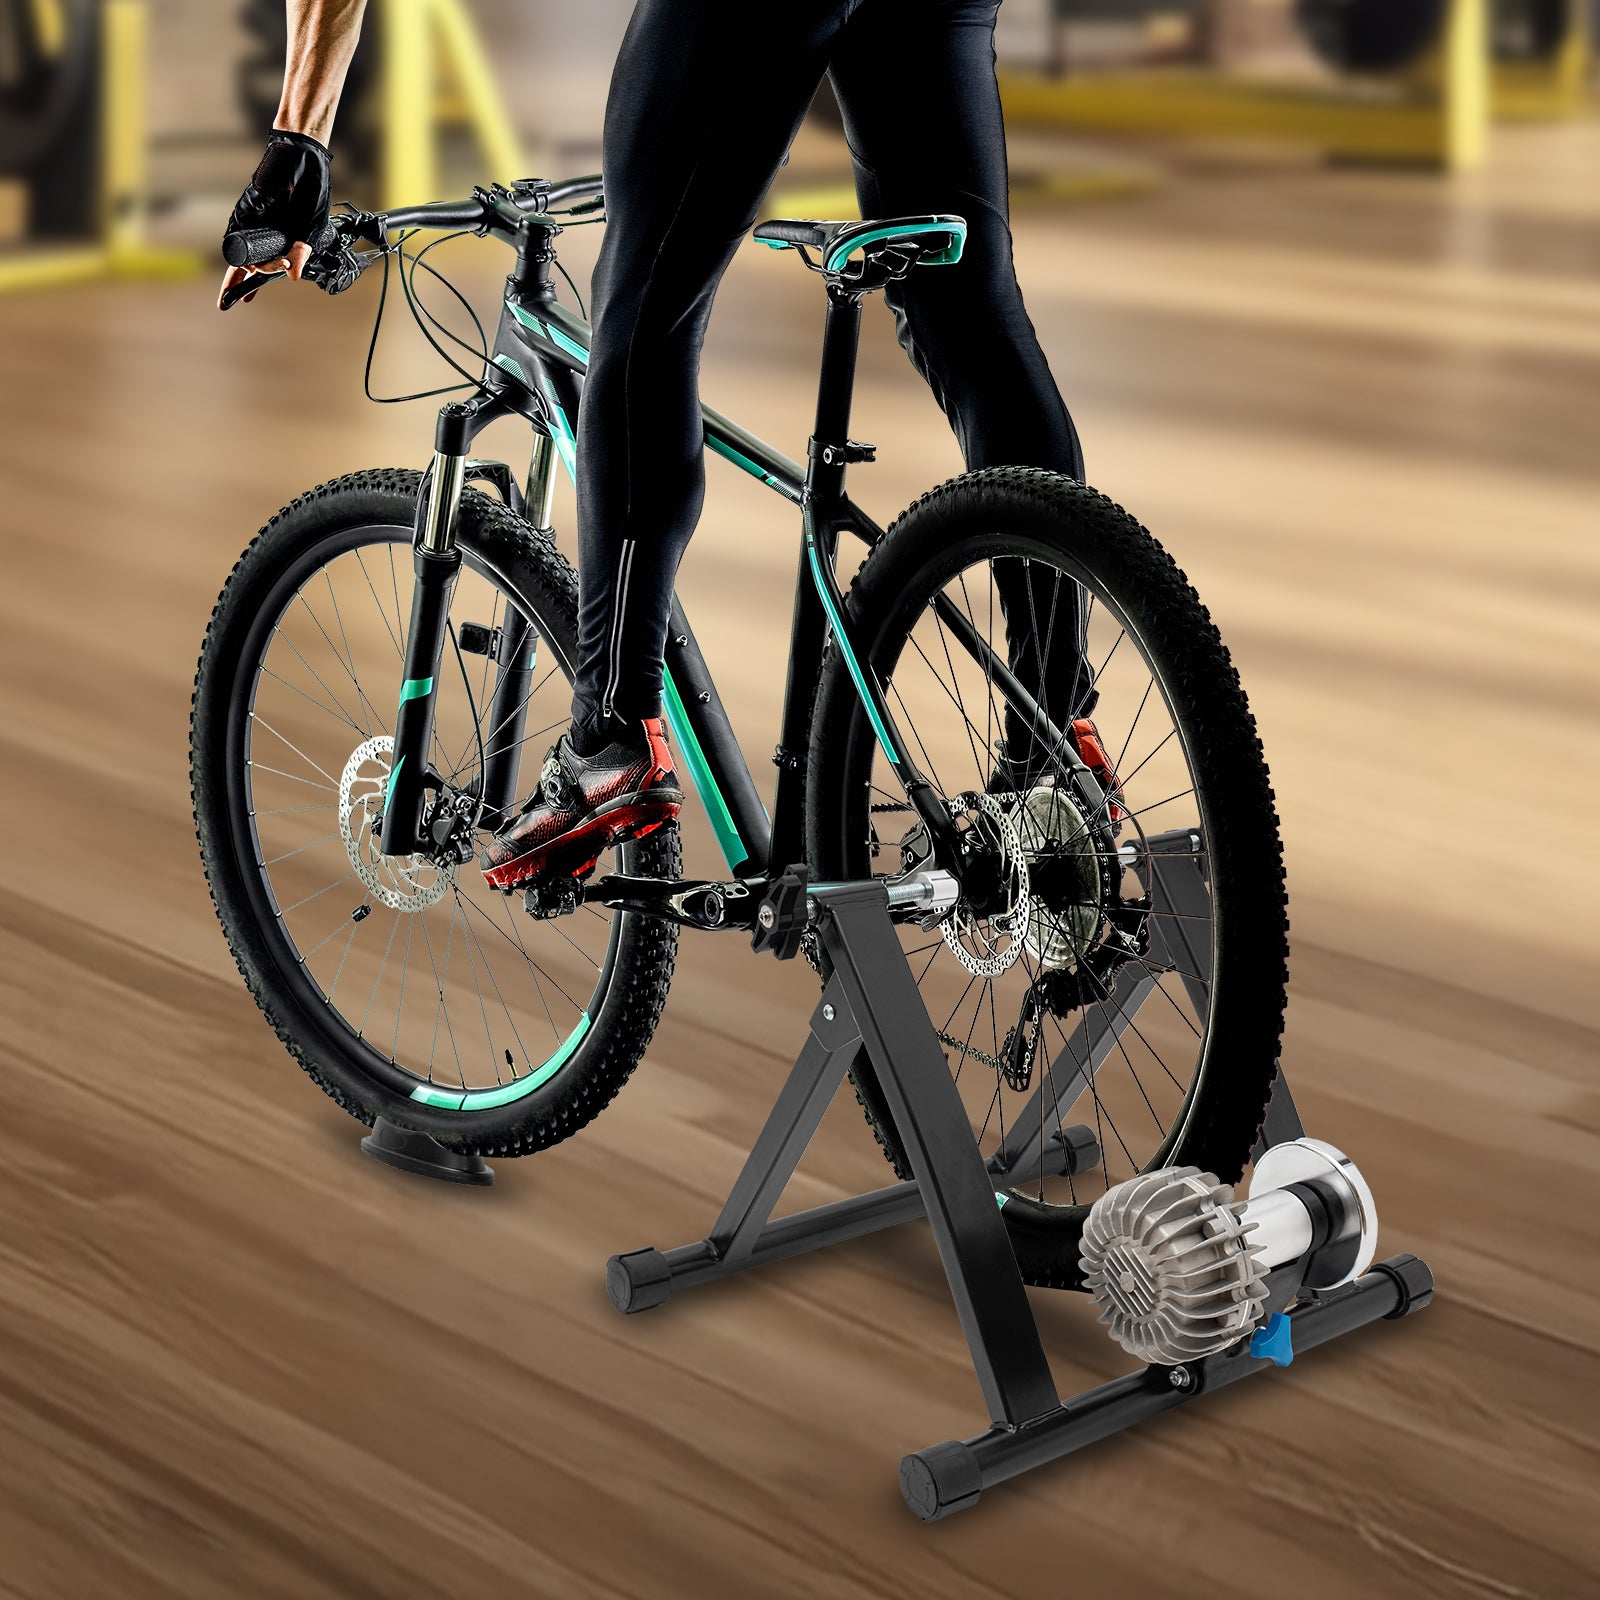 Soporte de suelo para bicicleta, soporte de estacionamiento de bicicleta de  acero para bicicletas de 16 a 29 pulgadas, organizador de almacenamiento